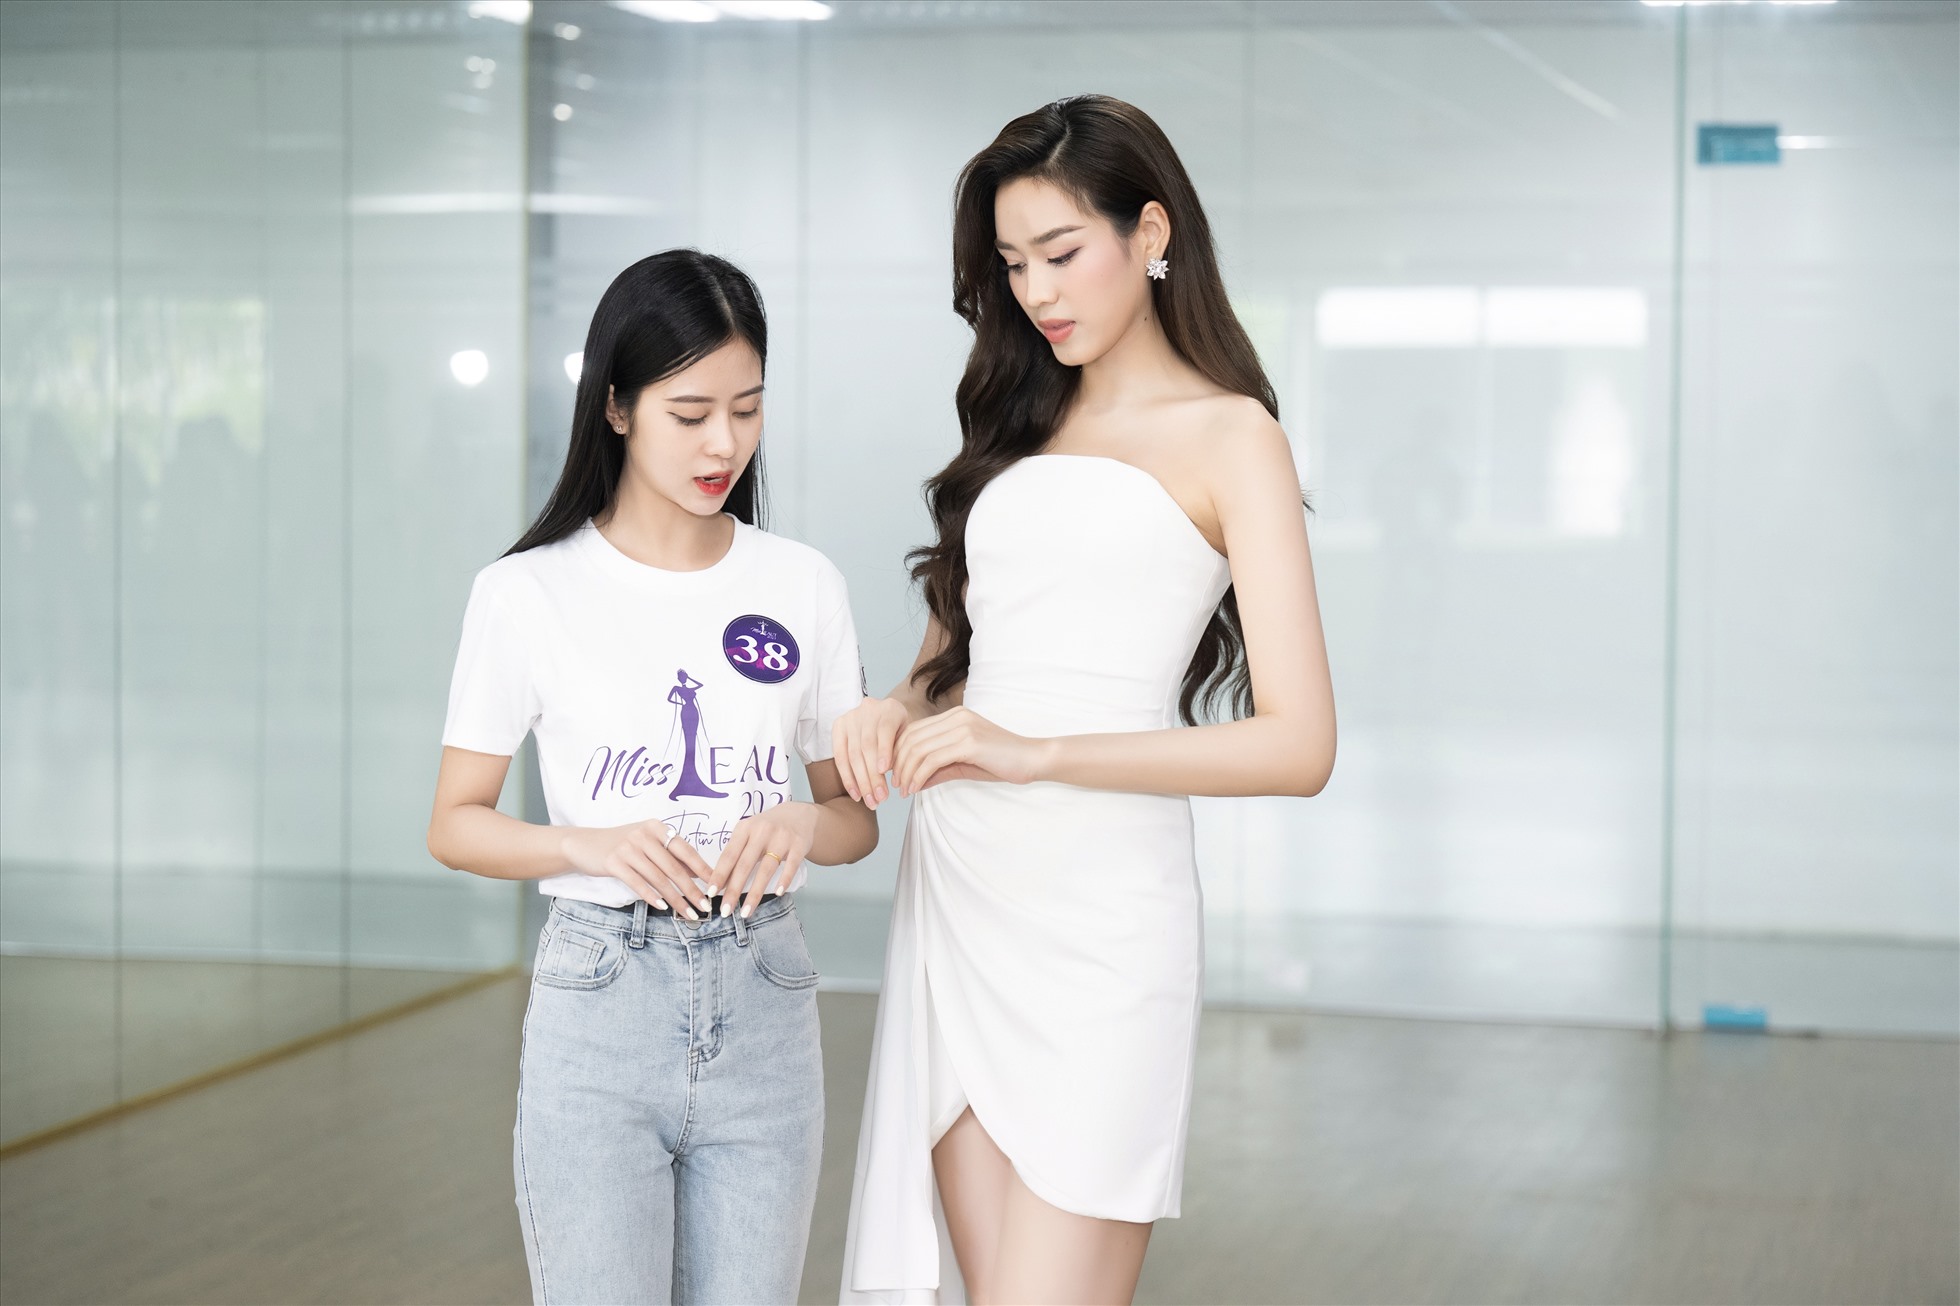 Hoa hậu Việt Nam 2020 tự tay chỉnh sửa tư thế và hướng dẫn từng bước đi cho các bạn thí sinh một cách tỉ mỉ. Ảnh: Sen Vàng.